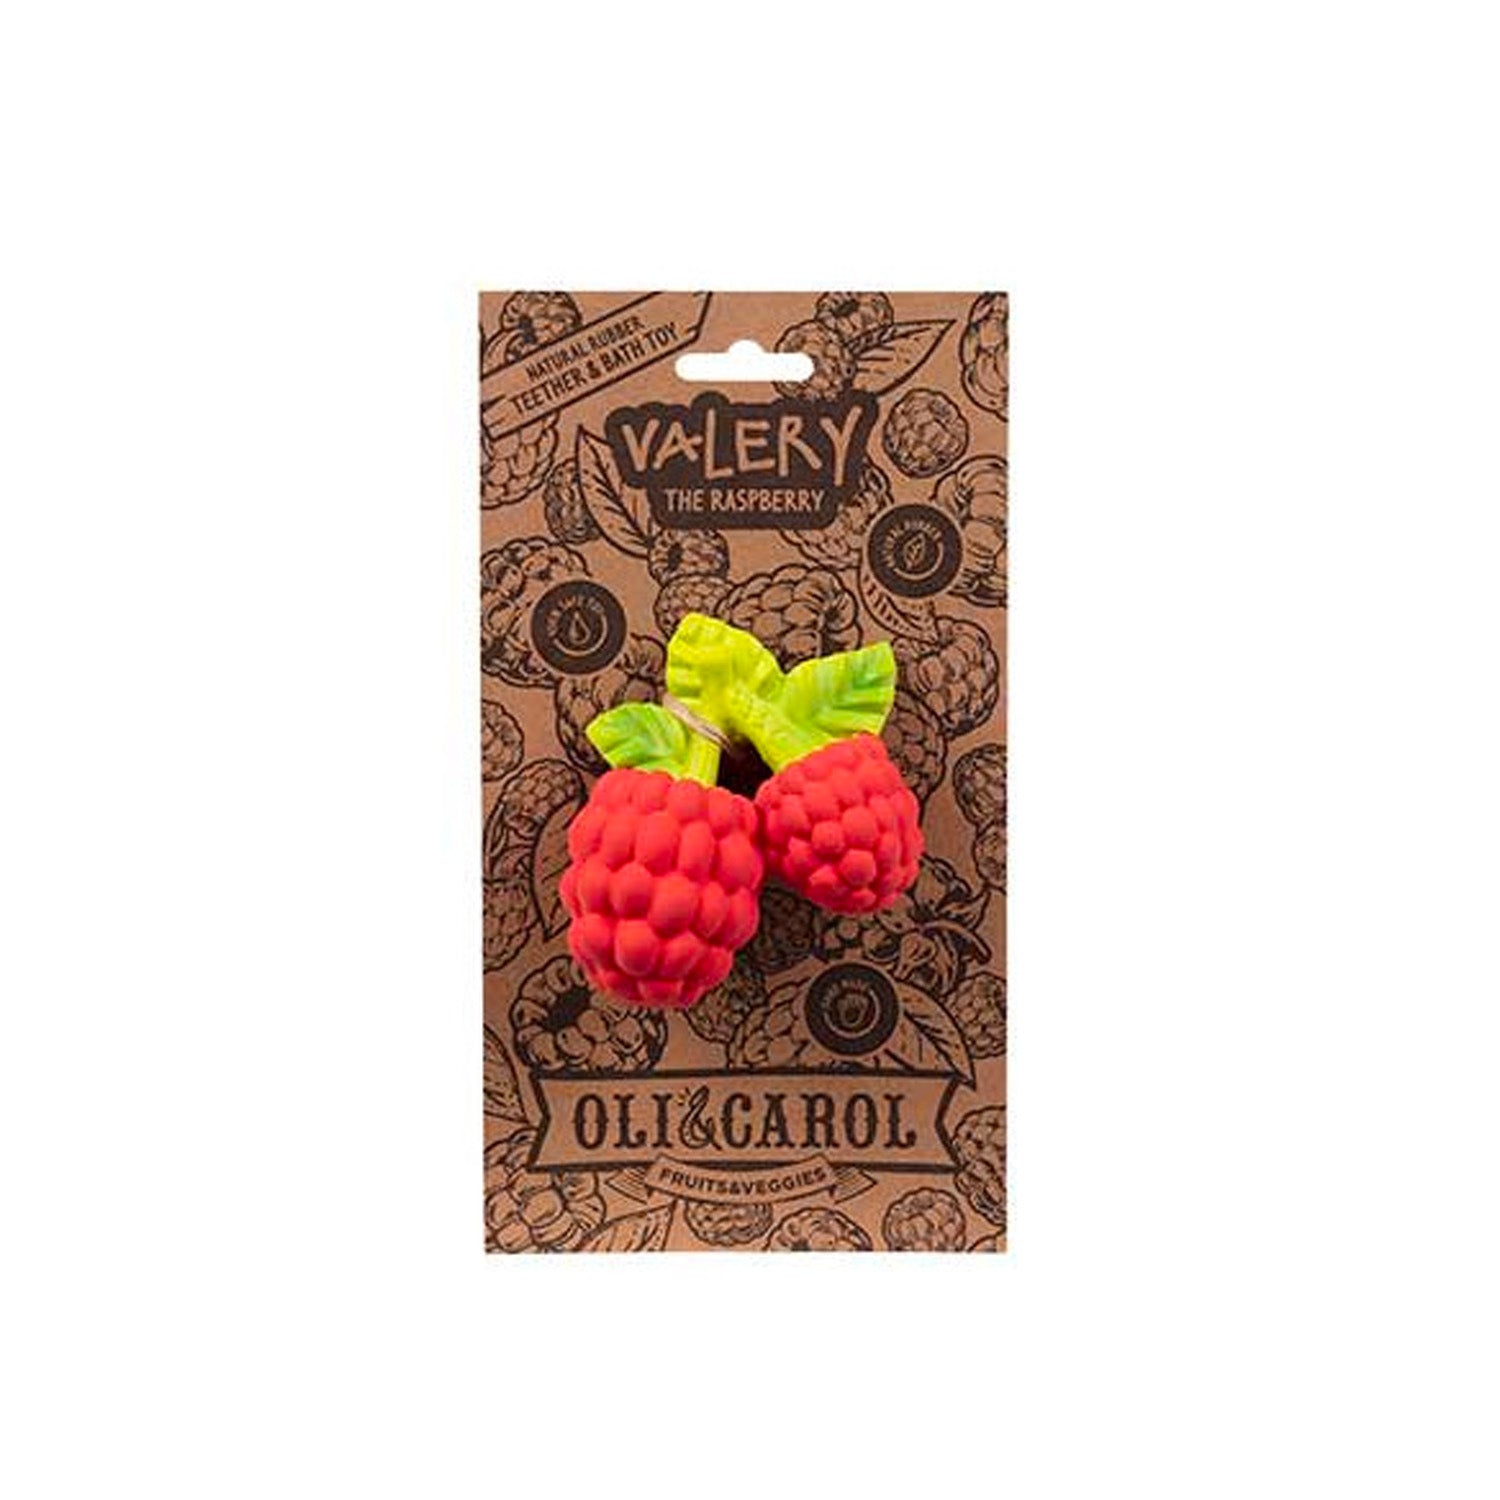 Valery The raspberry